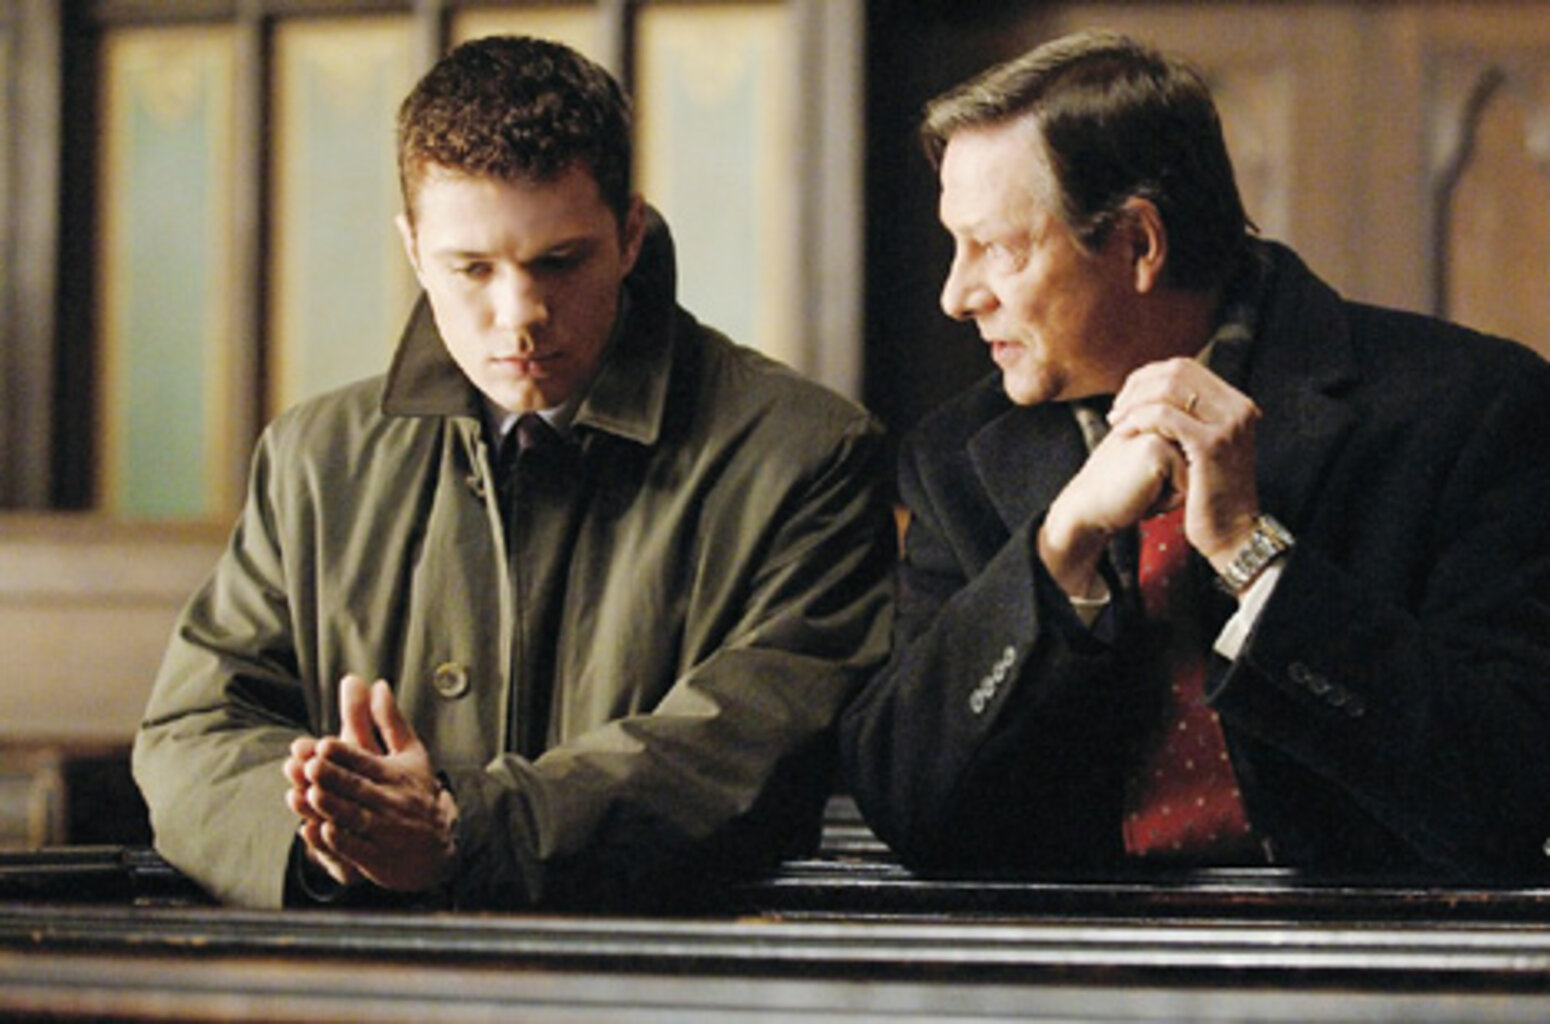 Двое мужчин в годах. Измена/Breach (2007). Двое мужчин разговаривают. Беседа двух мужчин.